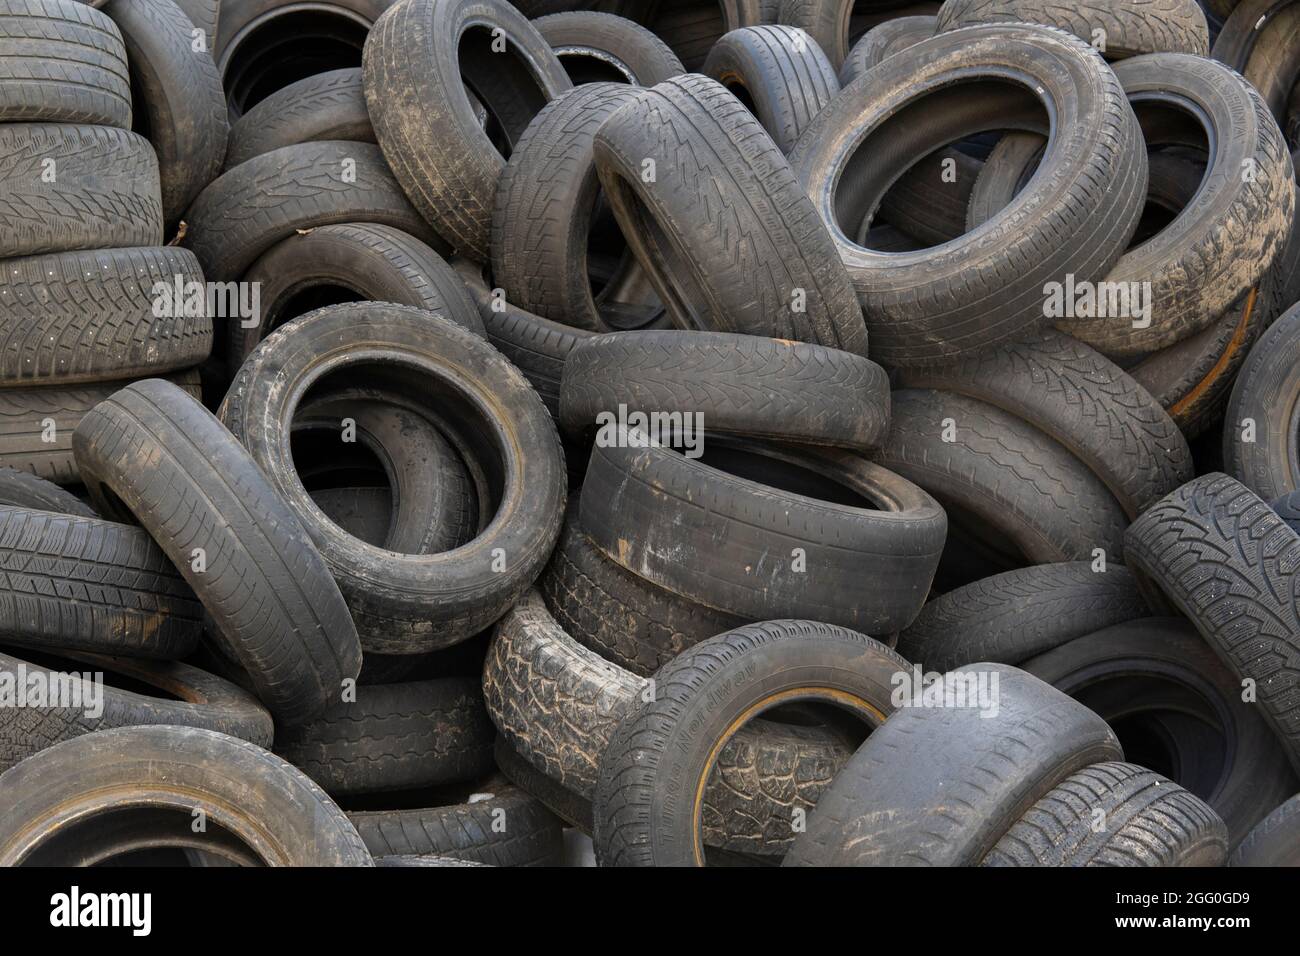 Gebrauchte Autoreifen stapeln sich im Reifenwerkhof Stockfotografie - Alamy